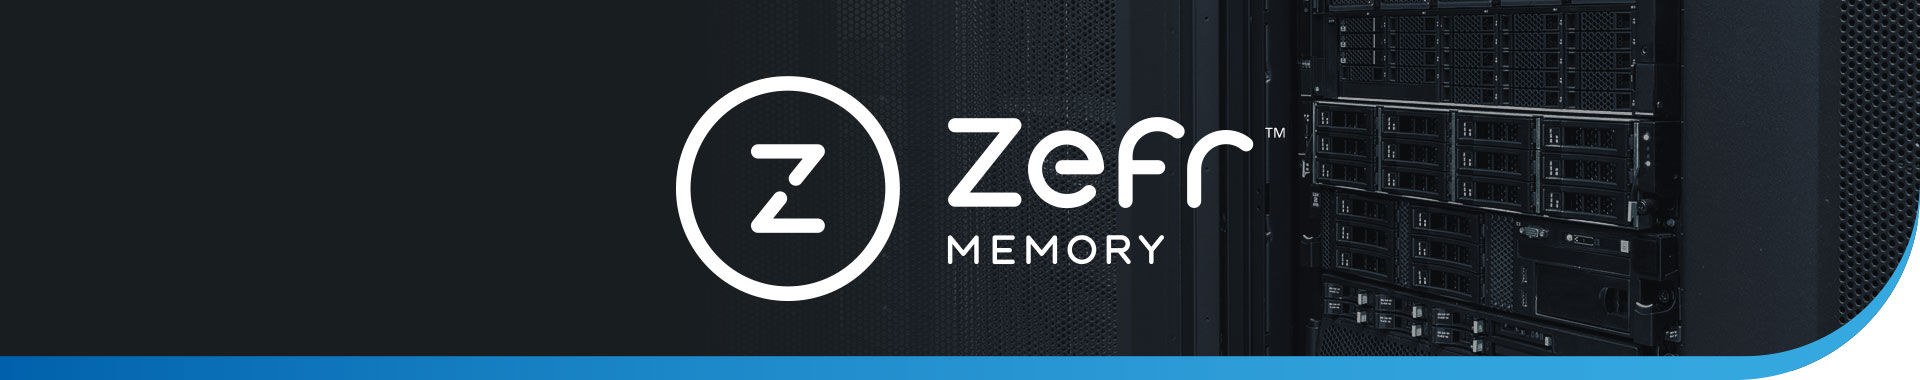 SMART_Modular_Technology_Zefr_Memory